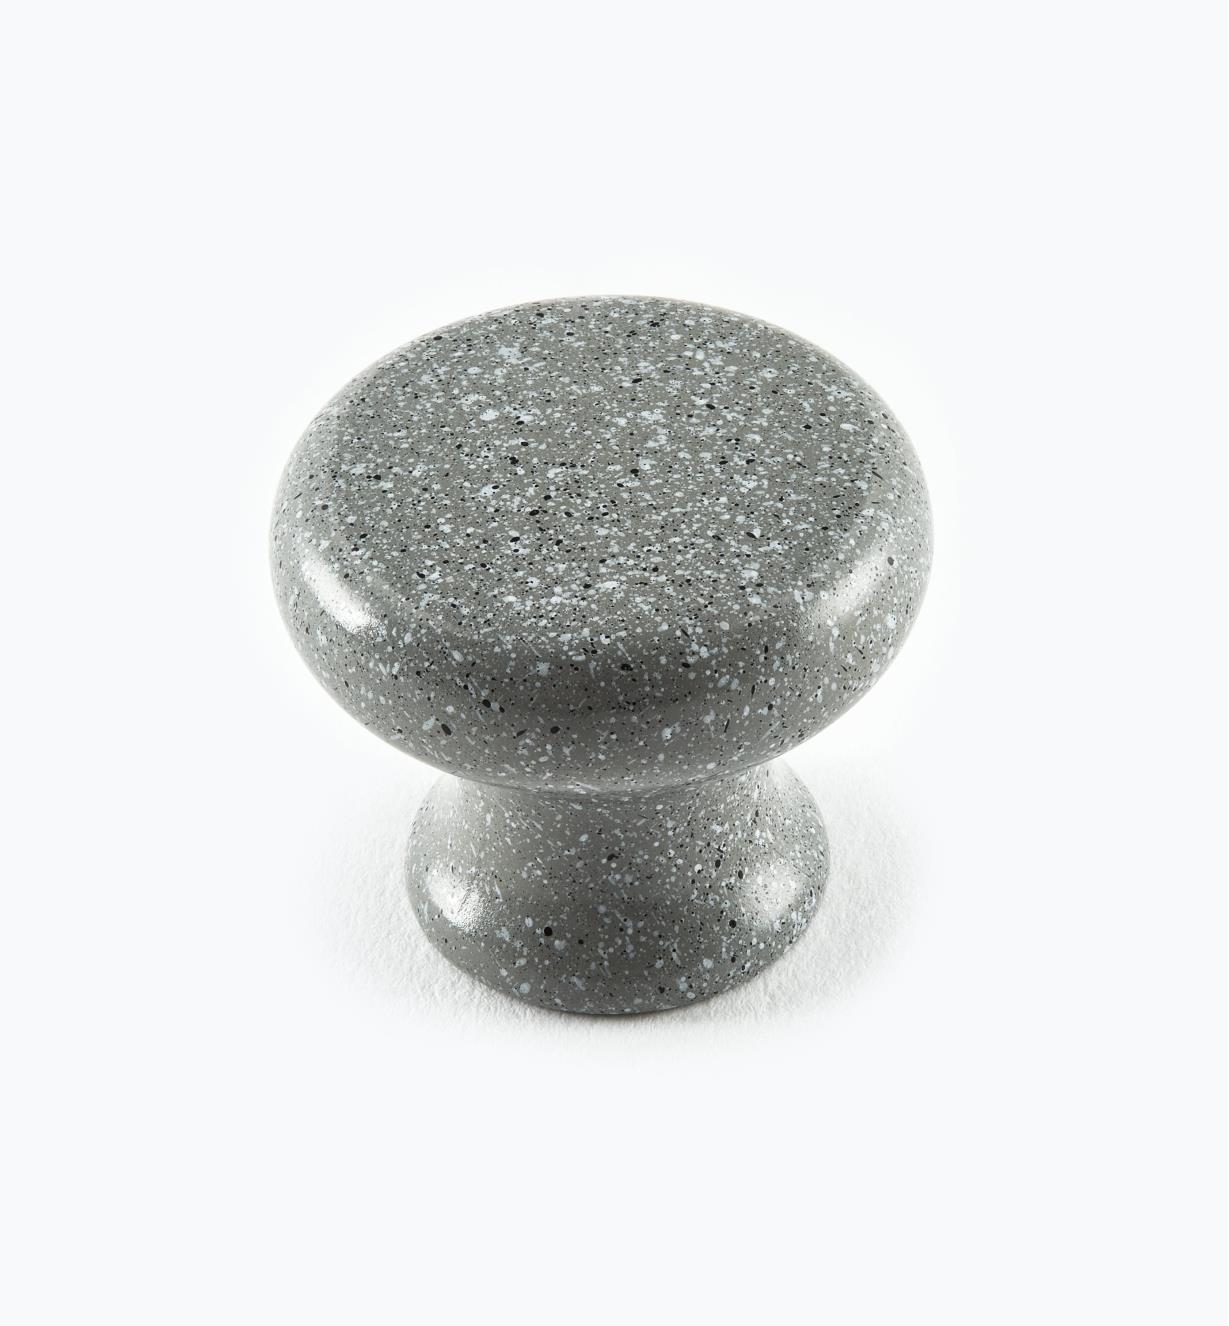 00W3752 - 1 1/4" Sandstone Gray Knob